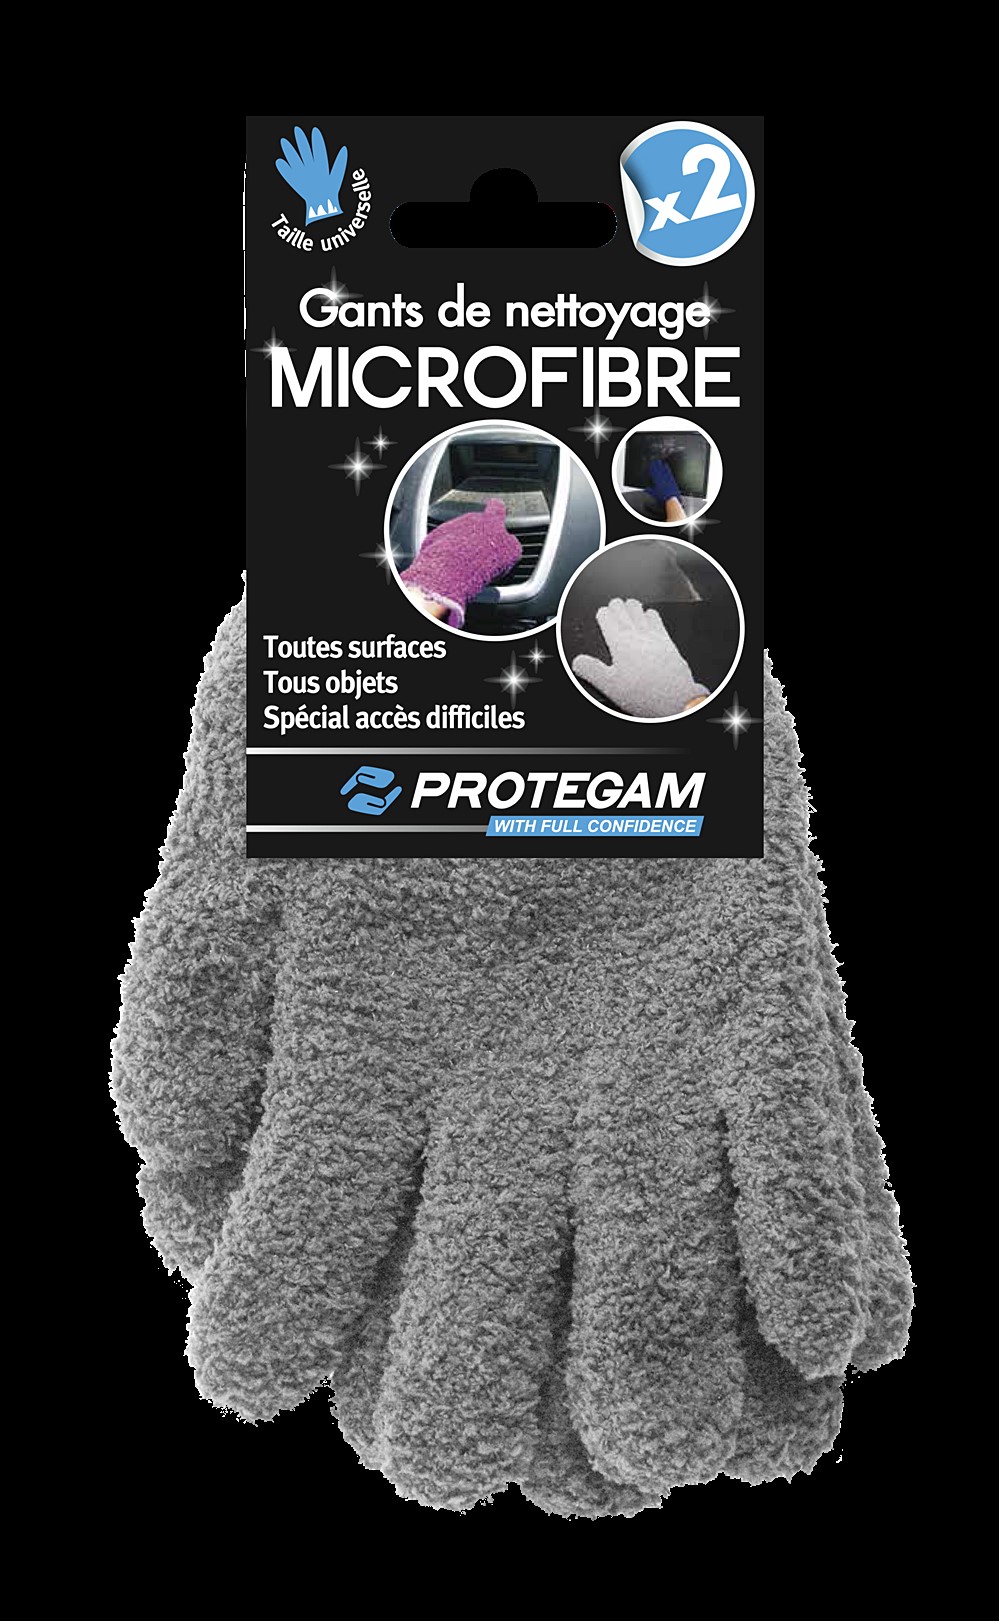 Gants de toilette en microfibre  Livraison le lendemain au Royaume-Uni –  Paragon Microfibre Ltd